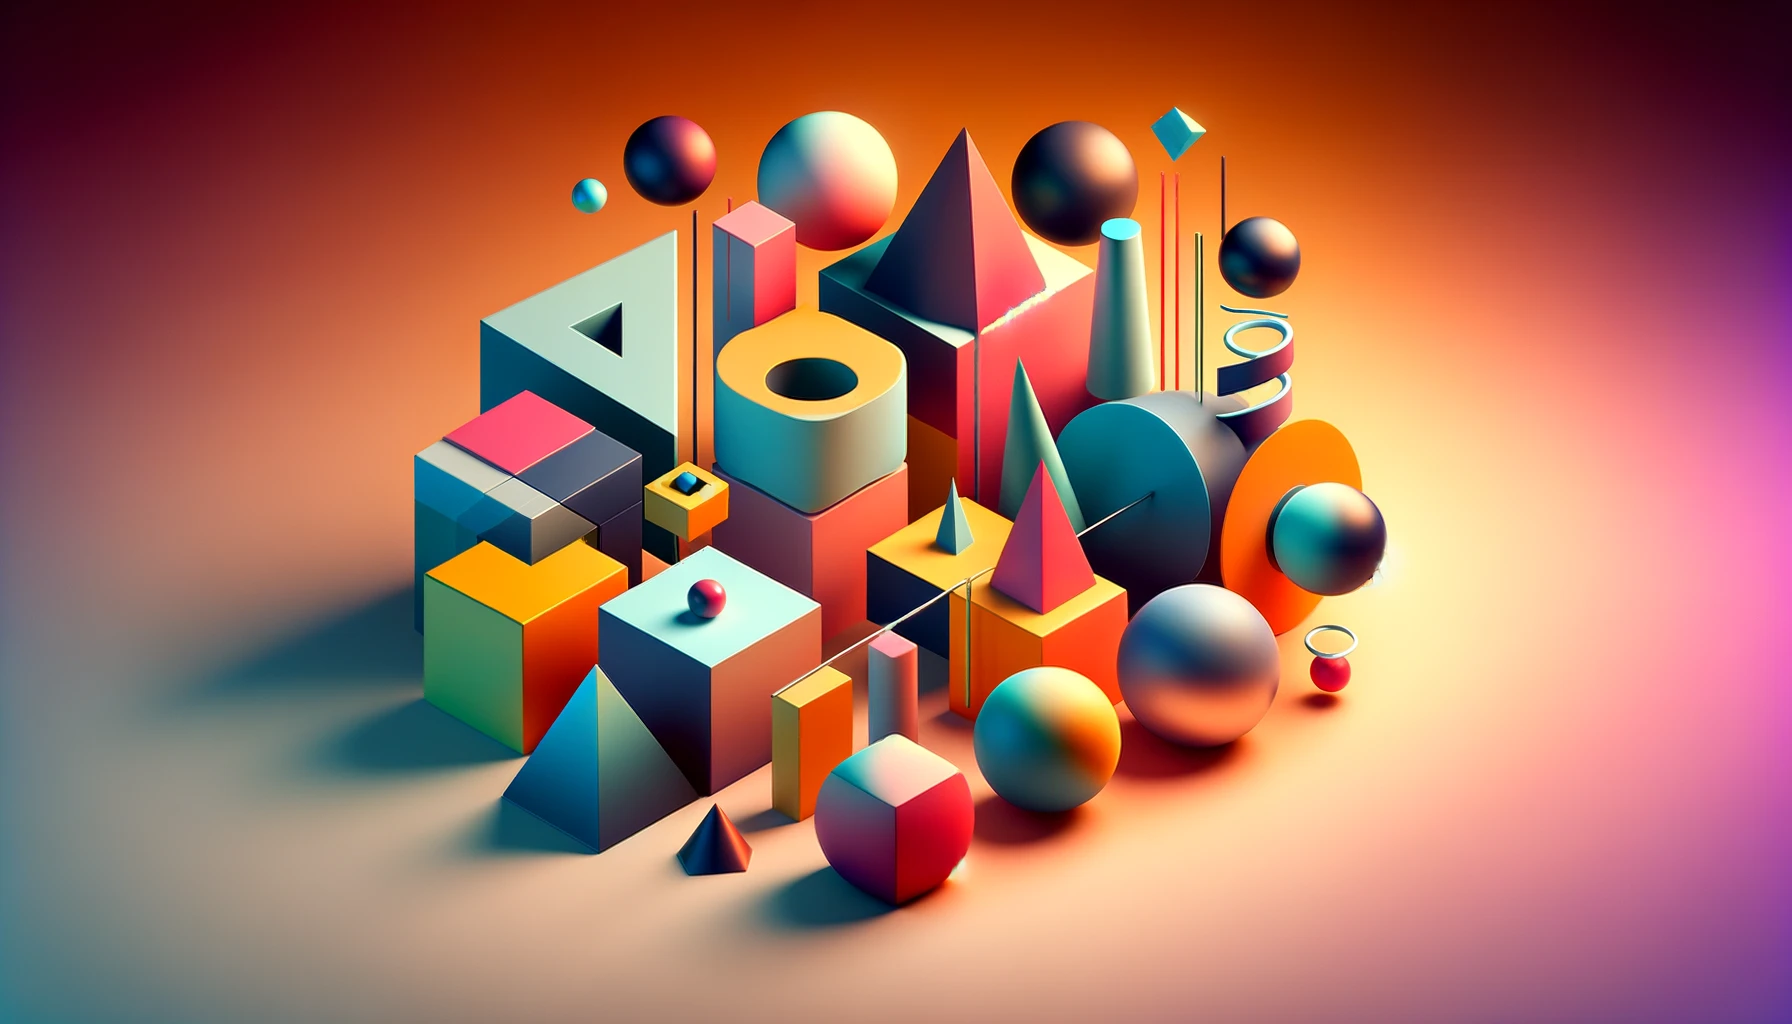 figuras geométricas 3D en un entorno abstracto